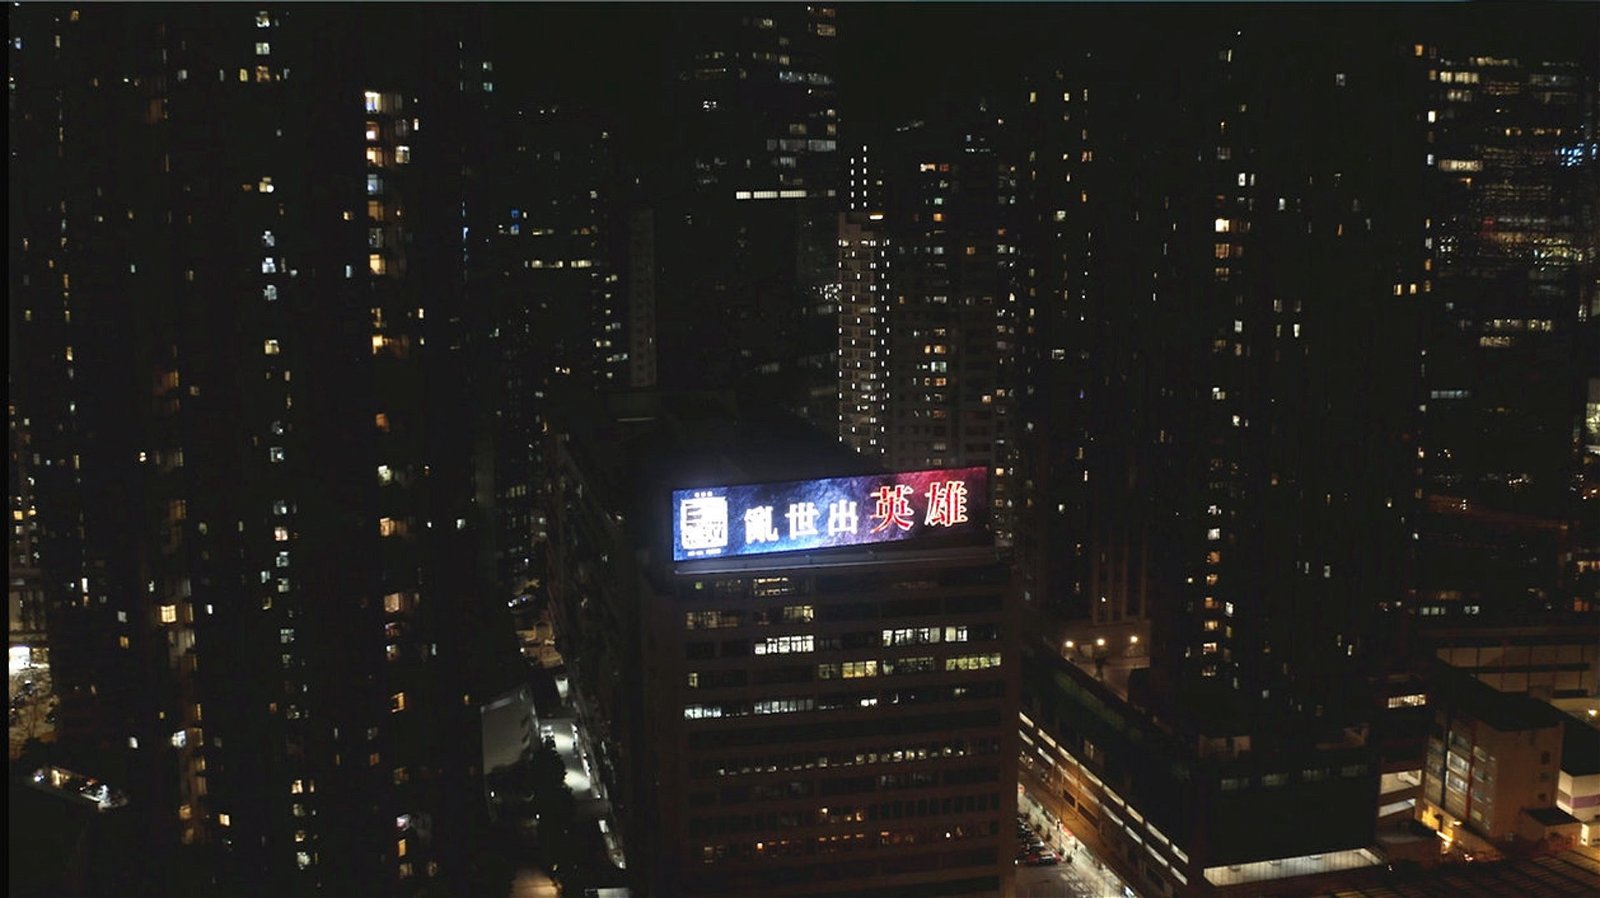 《真·三国无双》的宣传造势十分有气势，大型灯箱入夜后闪耀维港非常悦目。